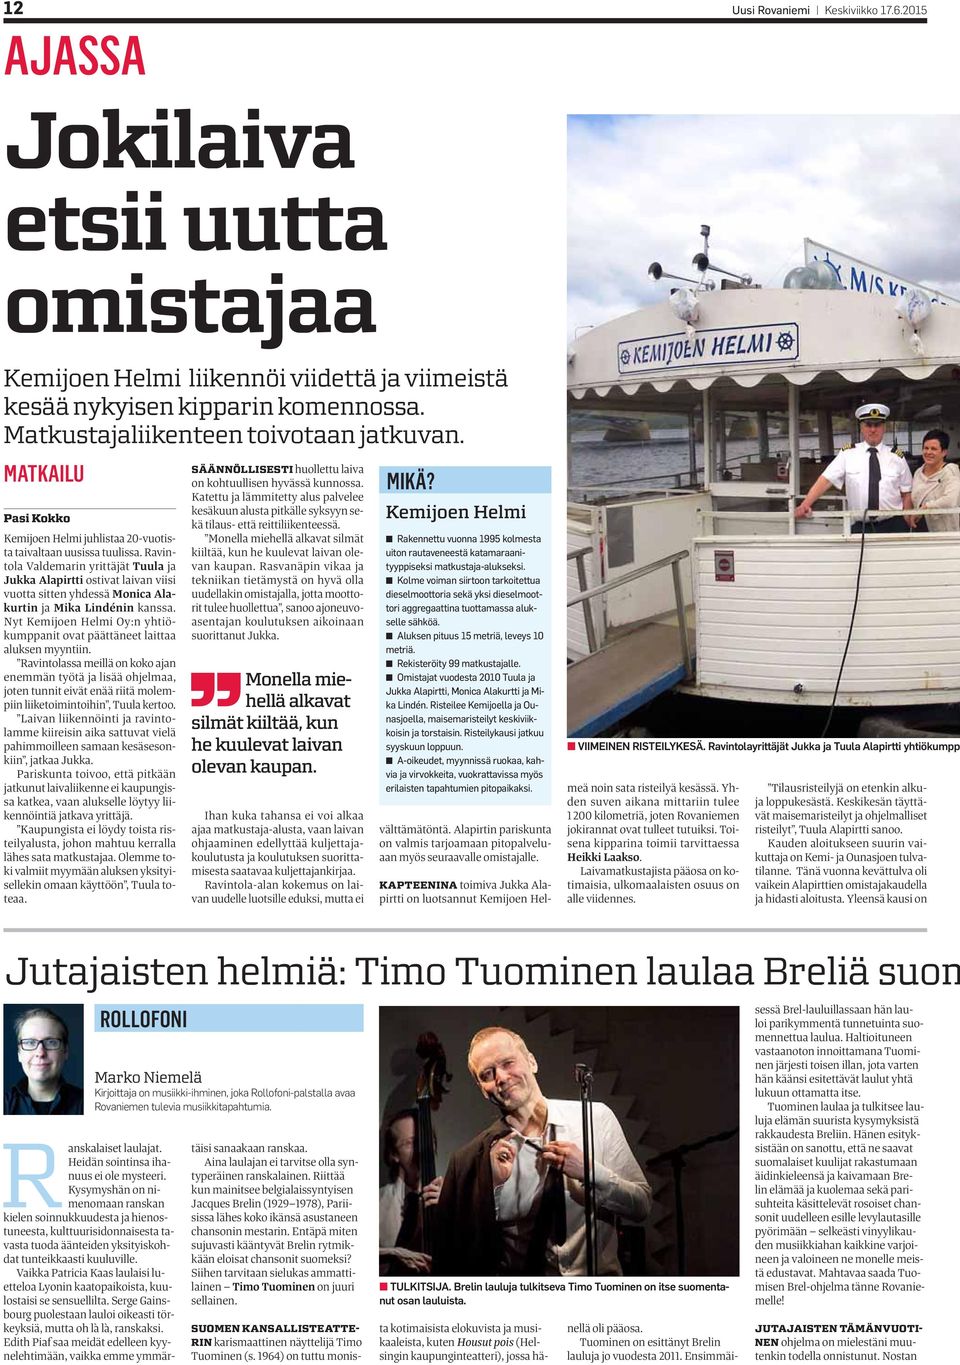 Ravintola Valdemarin yrittäjät Tuula ja Jukka Alapirtti ostivat laivan viisi vuotta sitten yhdessä Monica Alakurtin ja Mika Lindénin kanssa.